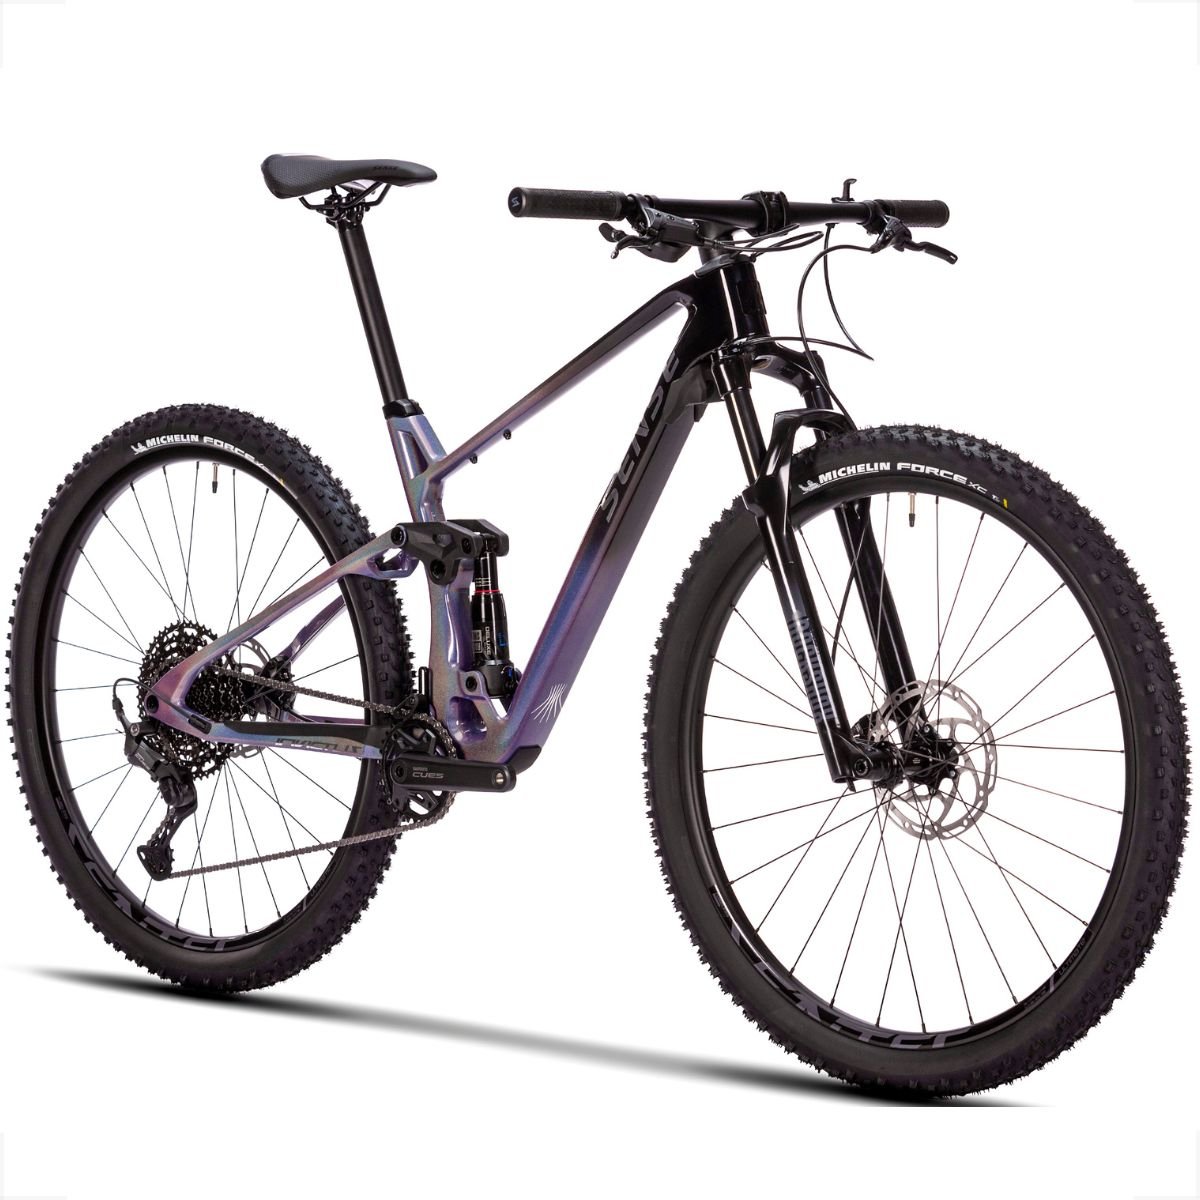 Bicicleta Full Sense Invictus Sport Carbono Shimano Cues:roxo+preto/15 - 1